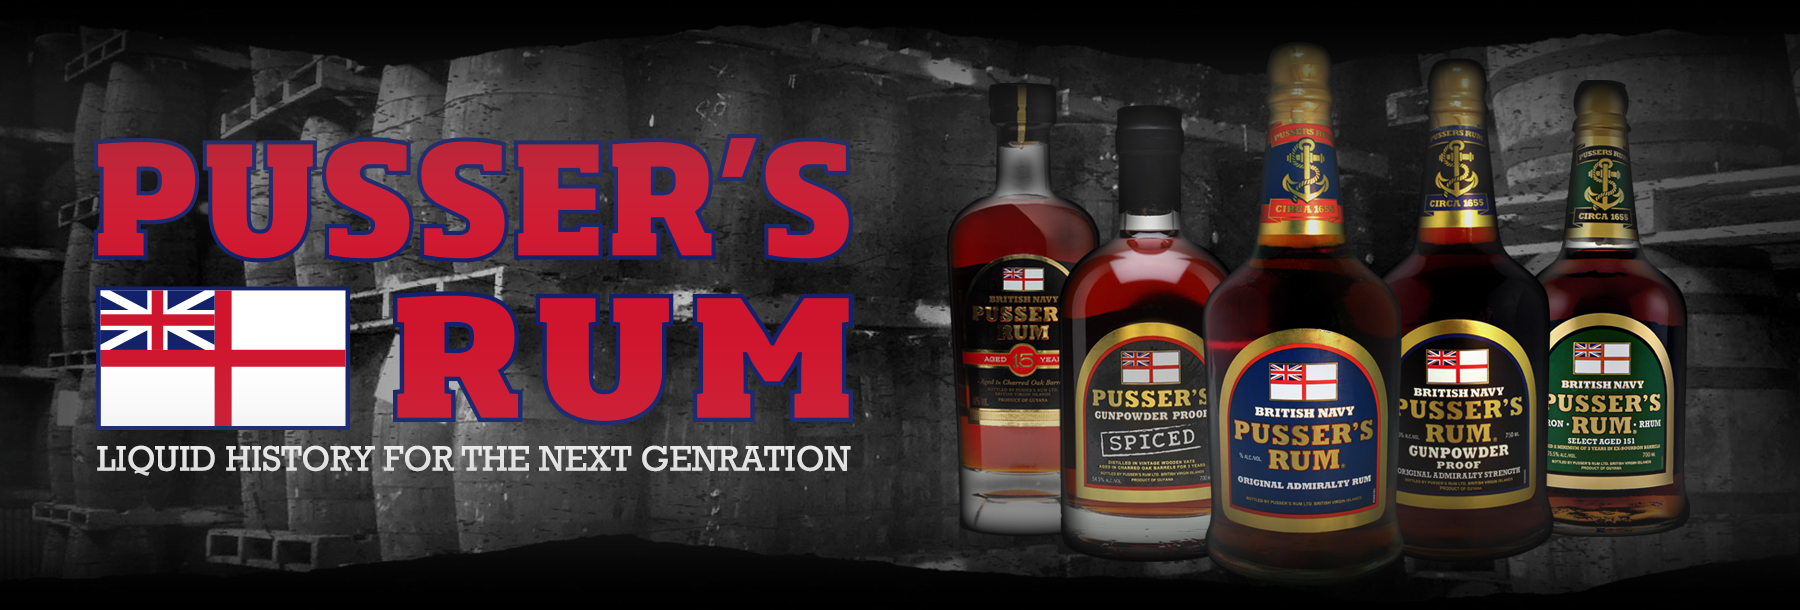 Pusser's Rum Original British Royal Navy Rum